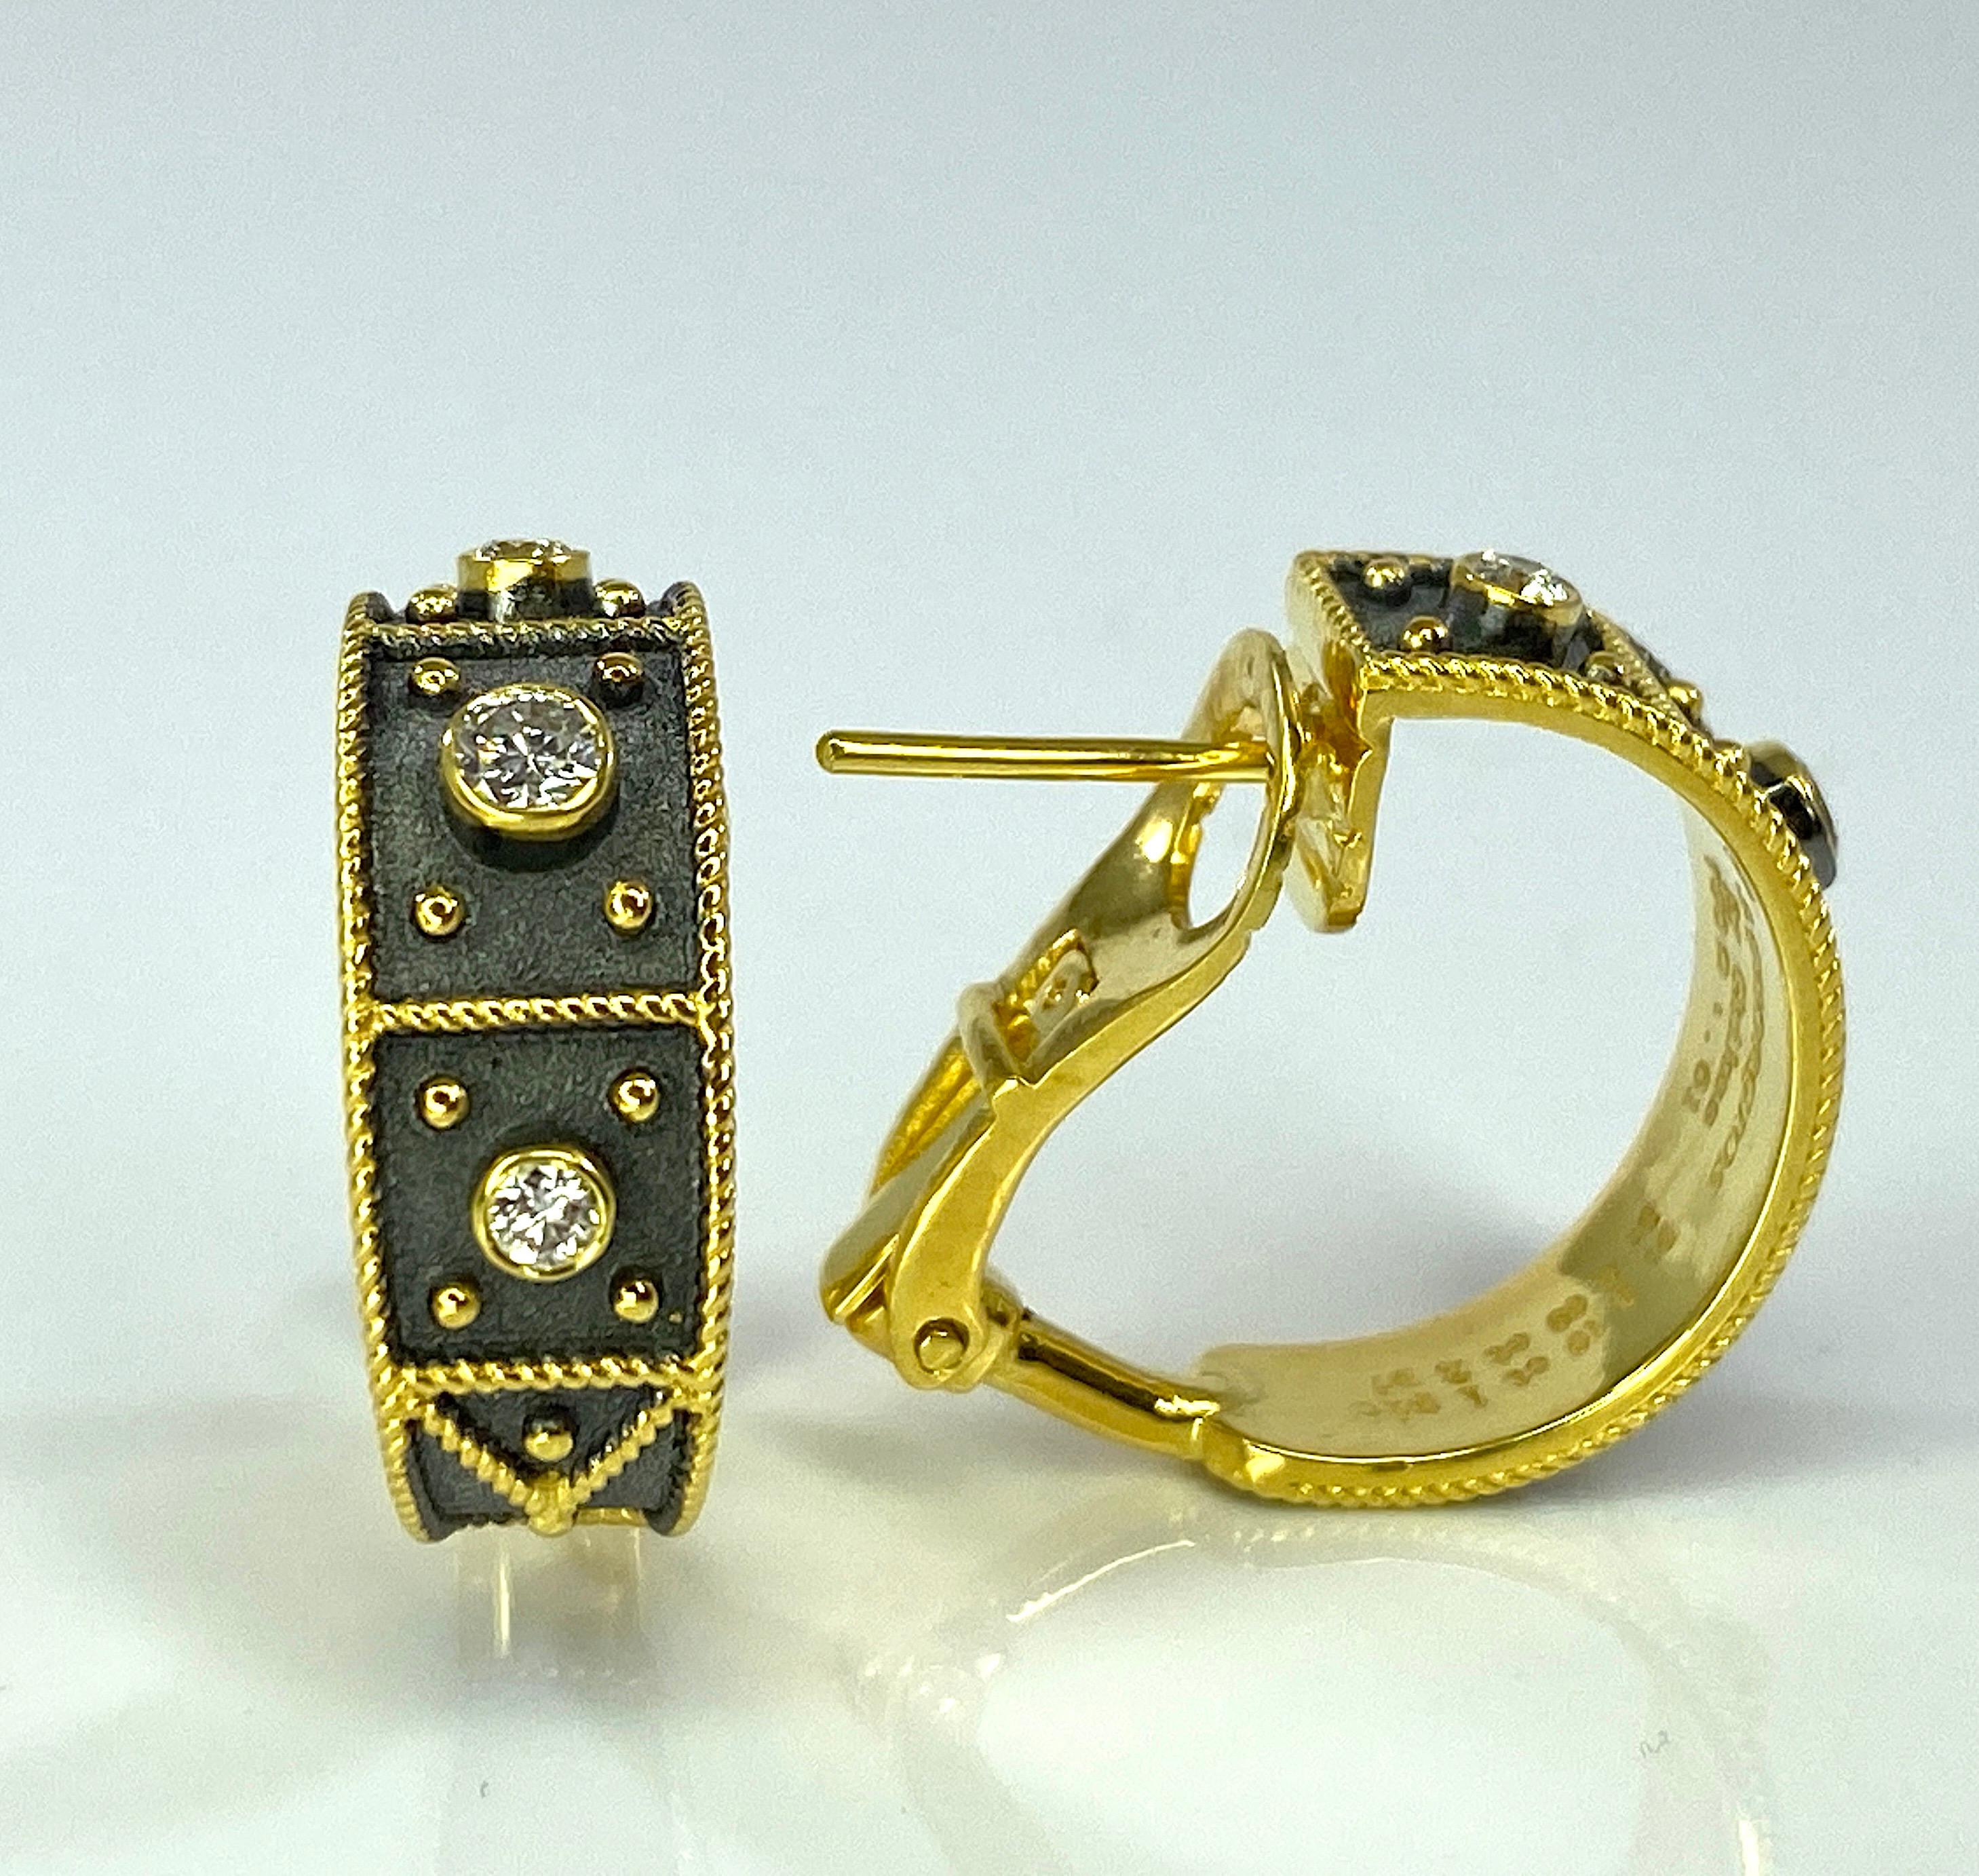 Die Designer-Ohrringe von S.Georgios sind aus 18 Karat Gelbgold gefertigt und unter dem Mikroskop im byzantinischen Stil mit Granulierung und Samtuntergrund verziert. Die Ohrringe bestehen aus 0,36 Karat weißen Diamanten im Brillantschliff. Diese